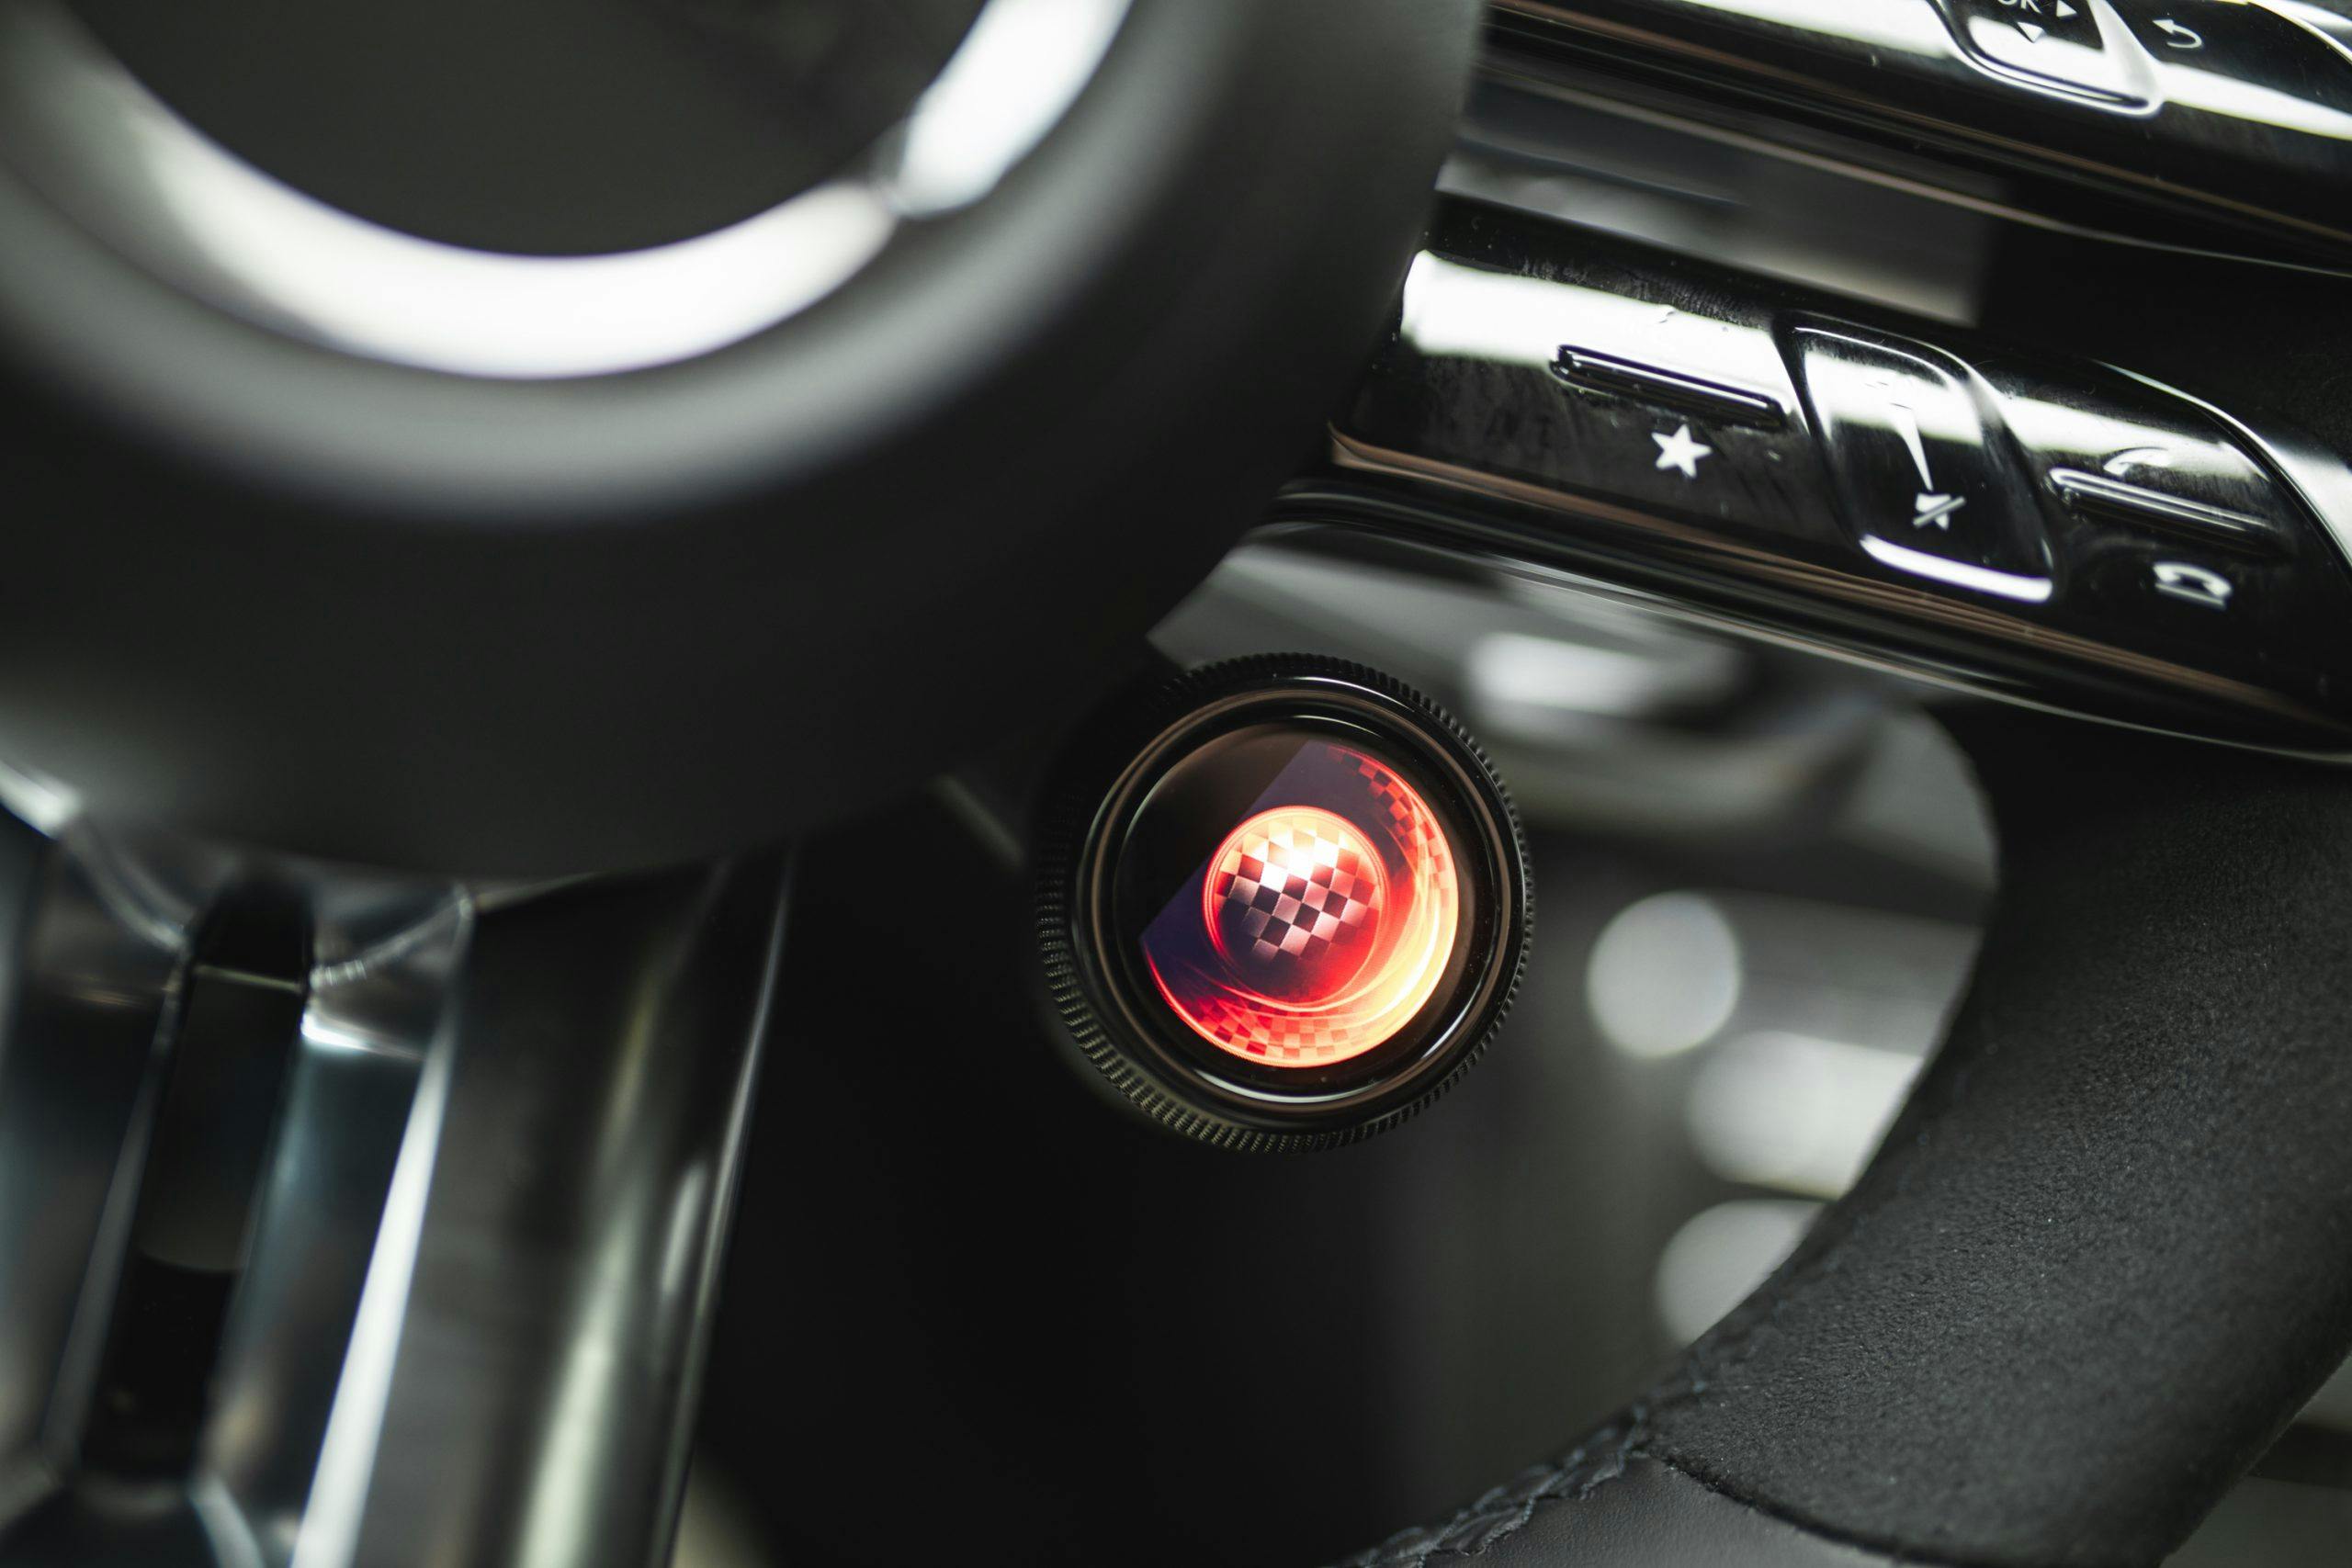 2021 Mercedes-AMG E63 S interior checkered flag button